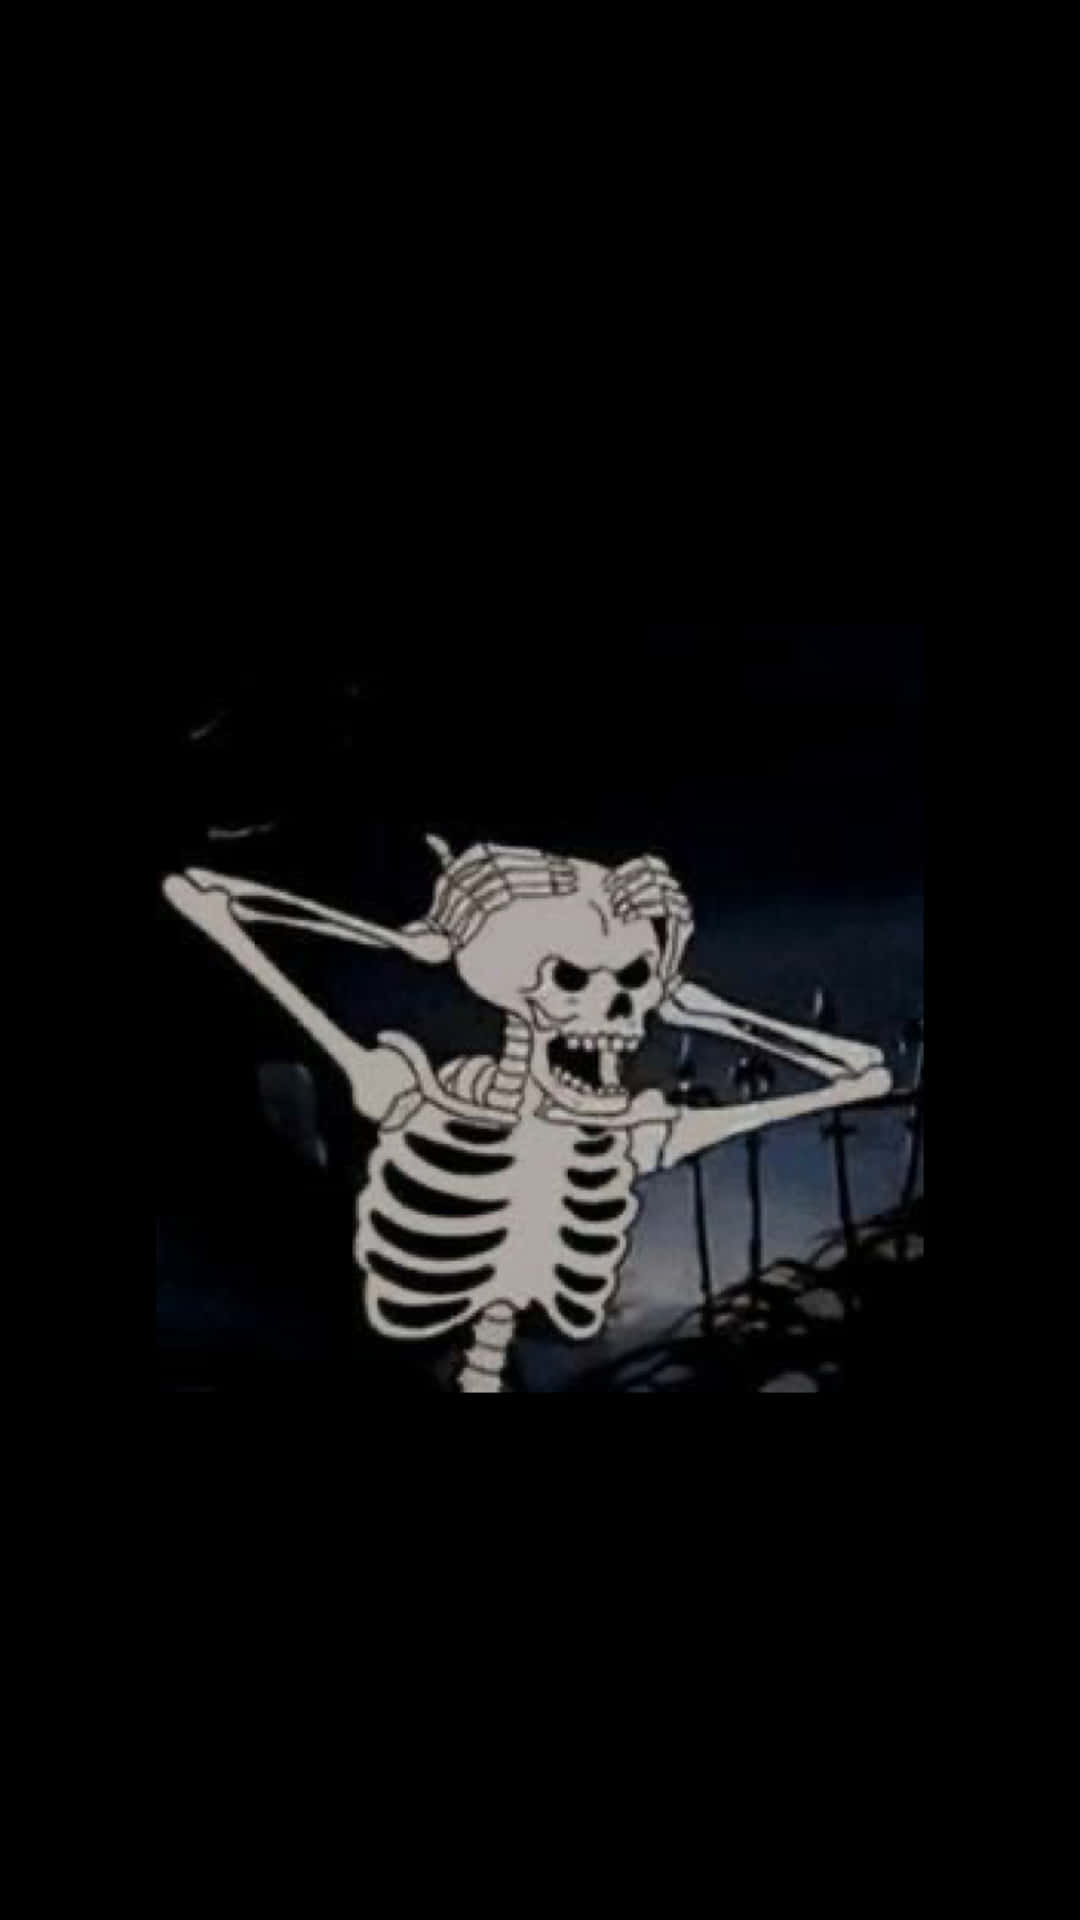 Skeleton Aesthetic Black Grunge Wallpaper